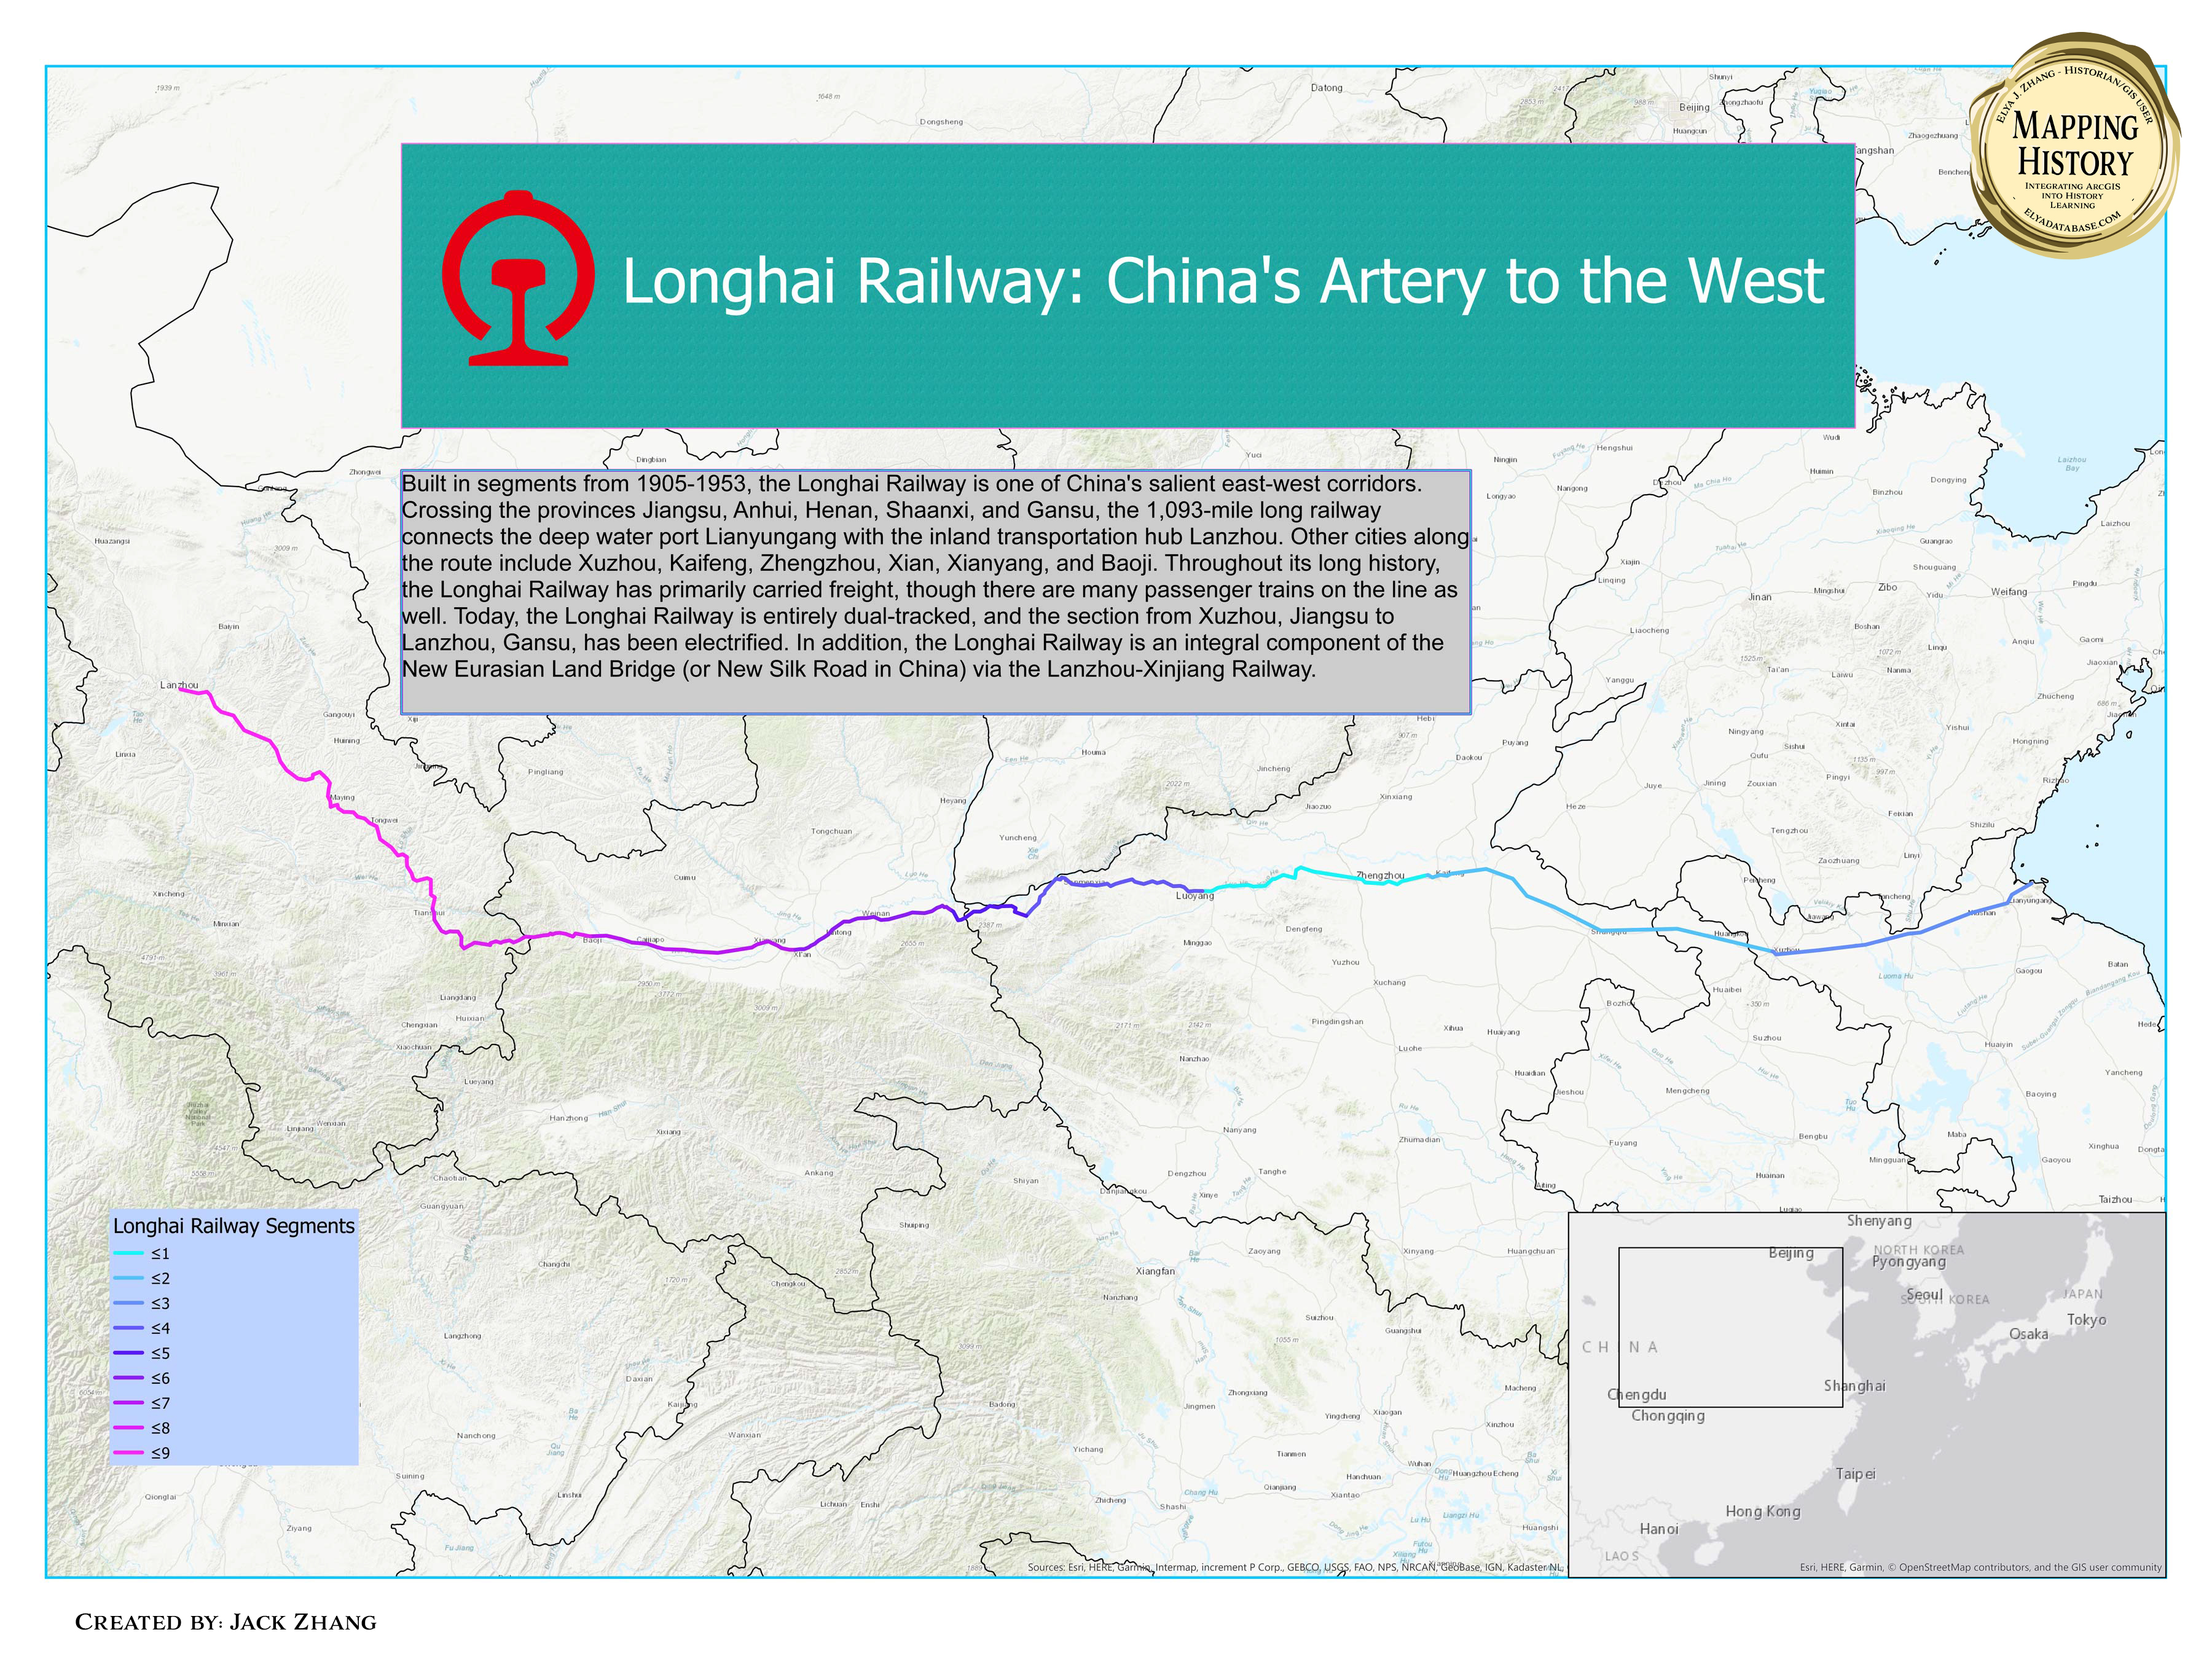 The Longhai Railway